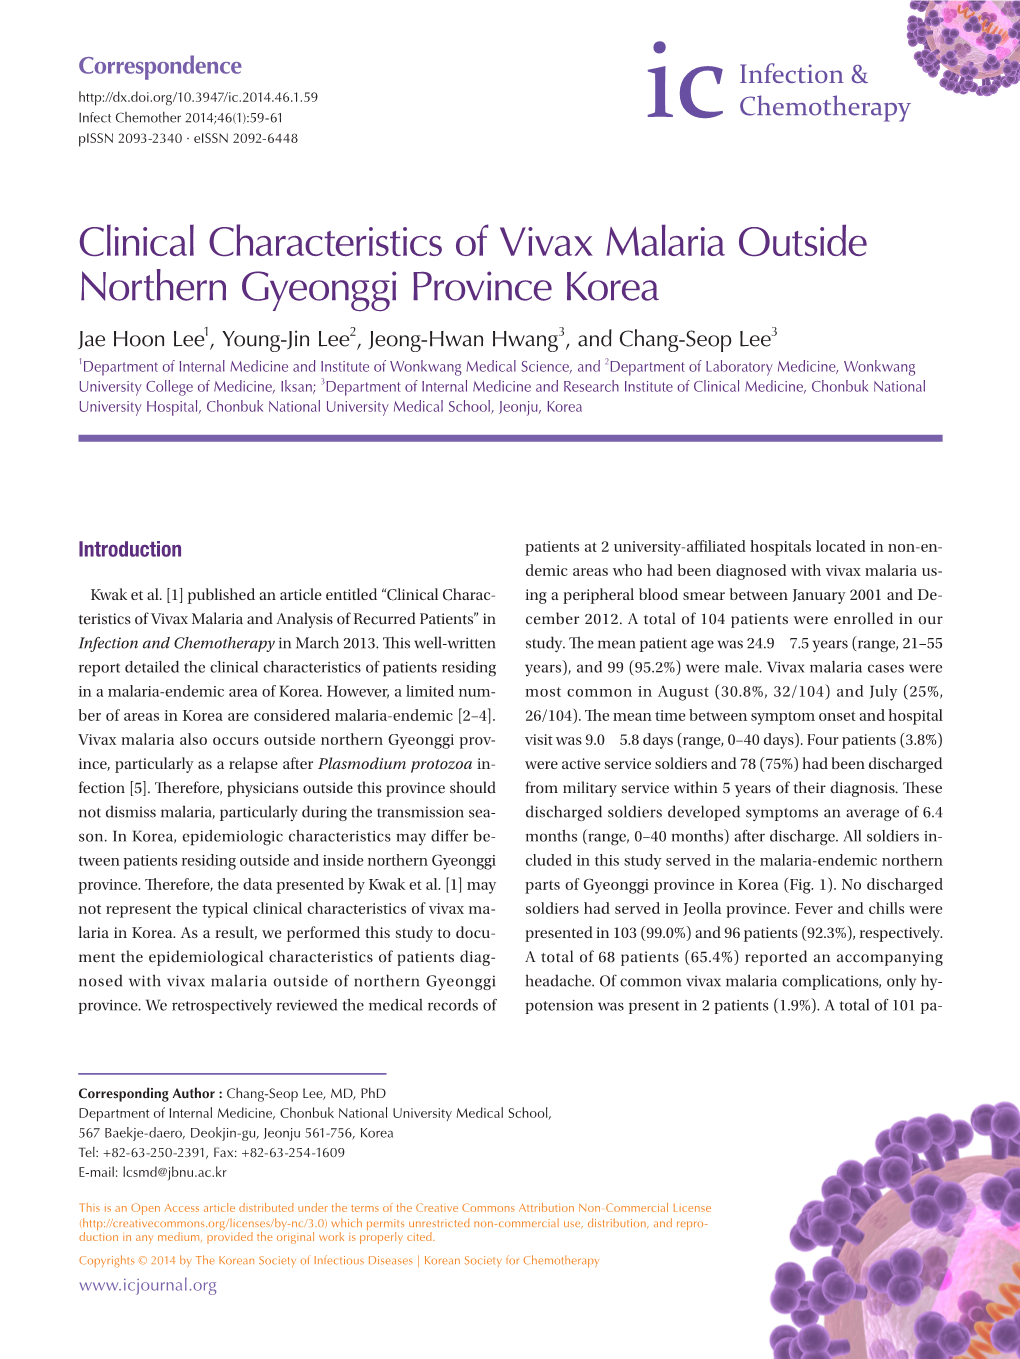 Clinical Characteristics of Vivax Malaria Outside Northern Gyeonggi